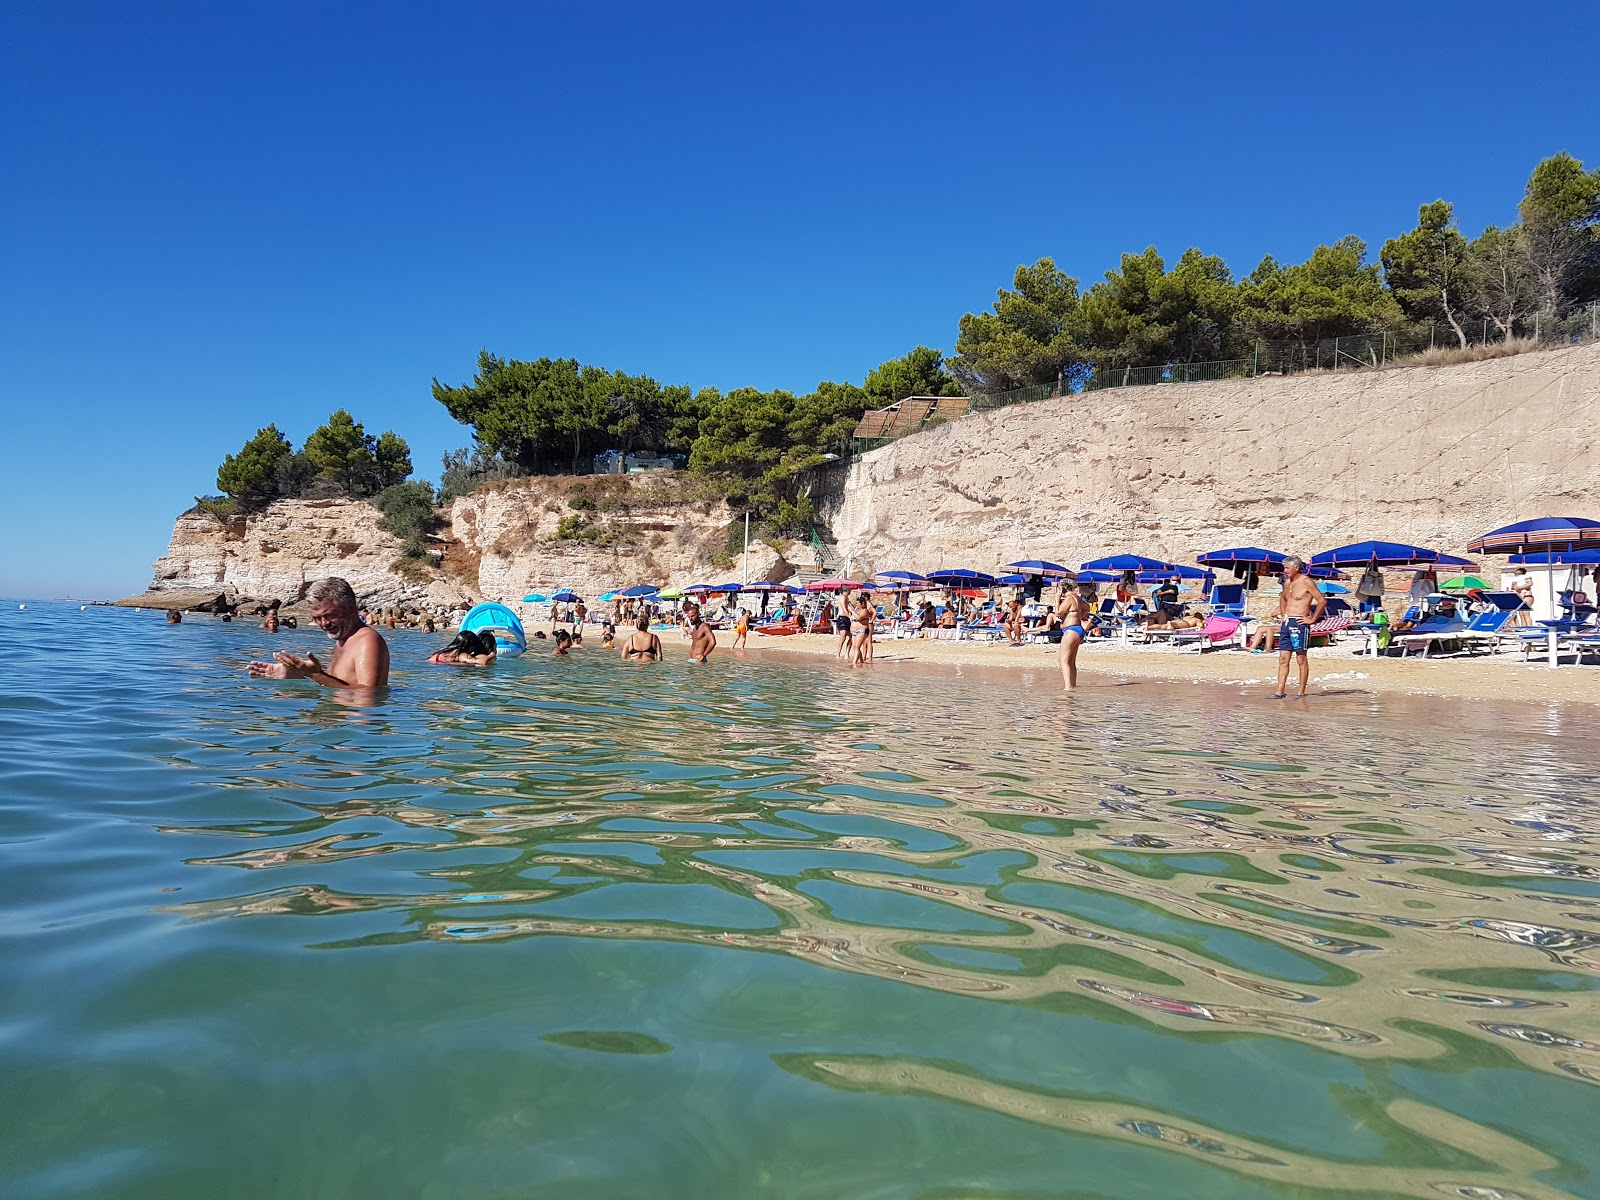 Fotografija Spiaggia di Varcaro nahaja se v naravnem okolju